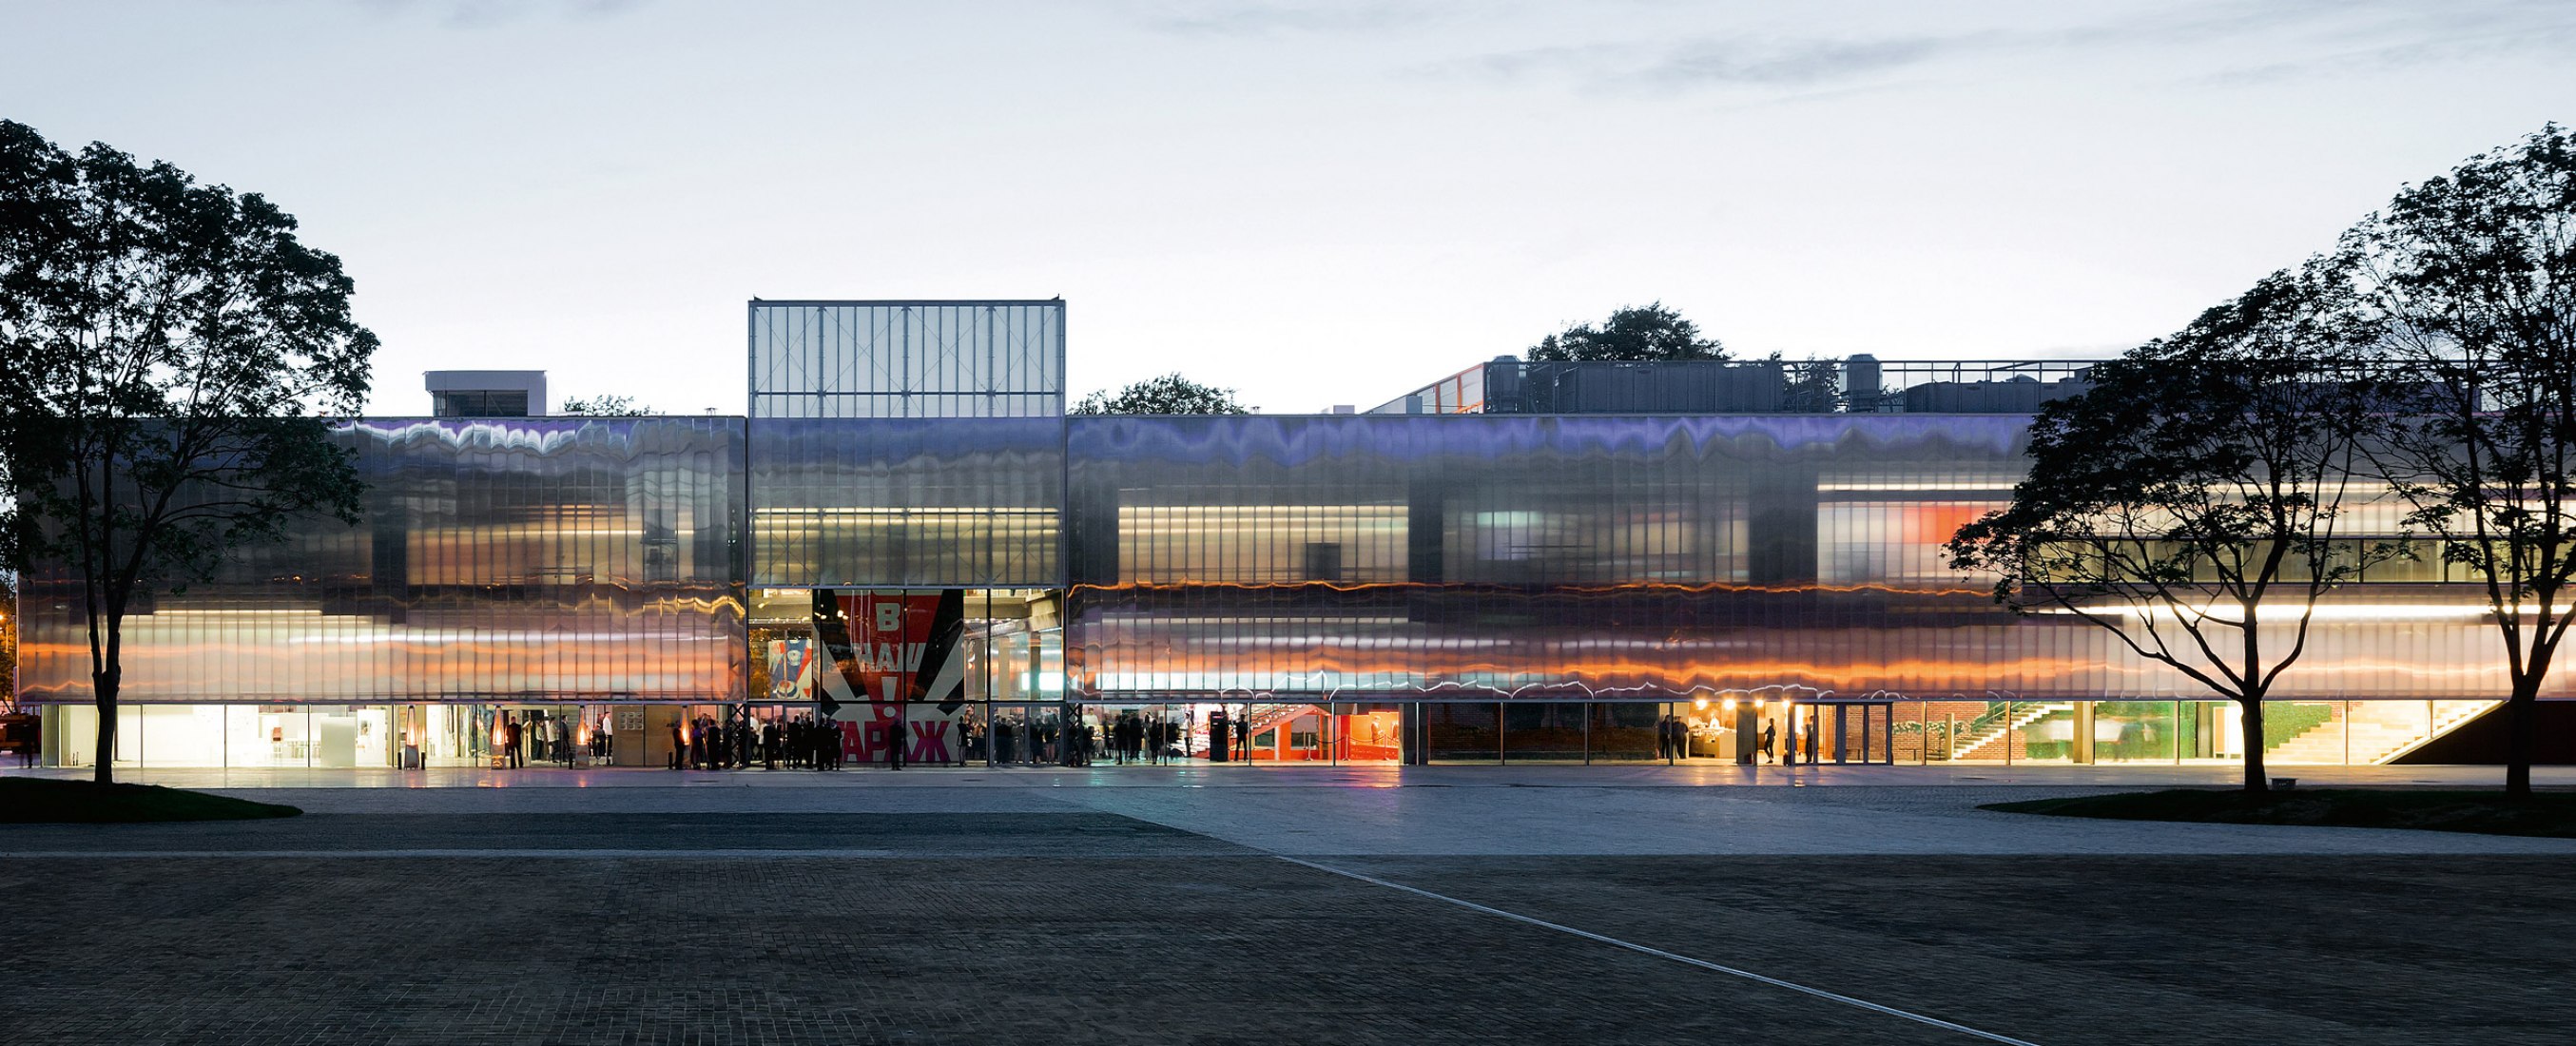 Garage Museum de Arte Contemporáneo, diseñado por Rem Koolhaas. Fotografía © Iwan Baan. Cortesía de Garage Museum.